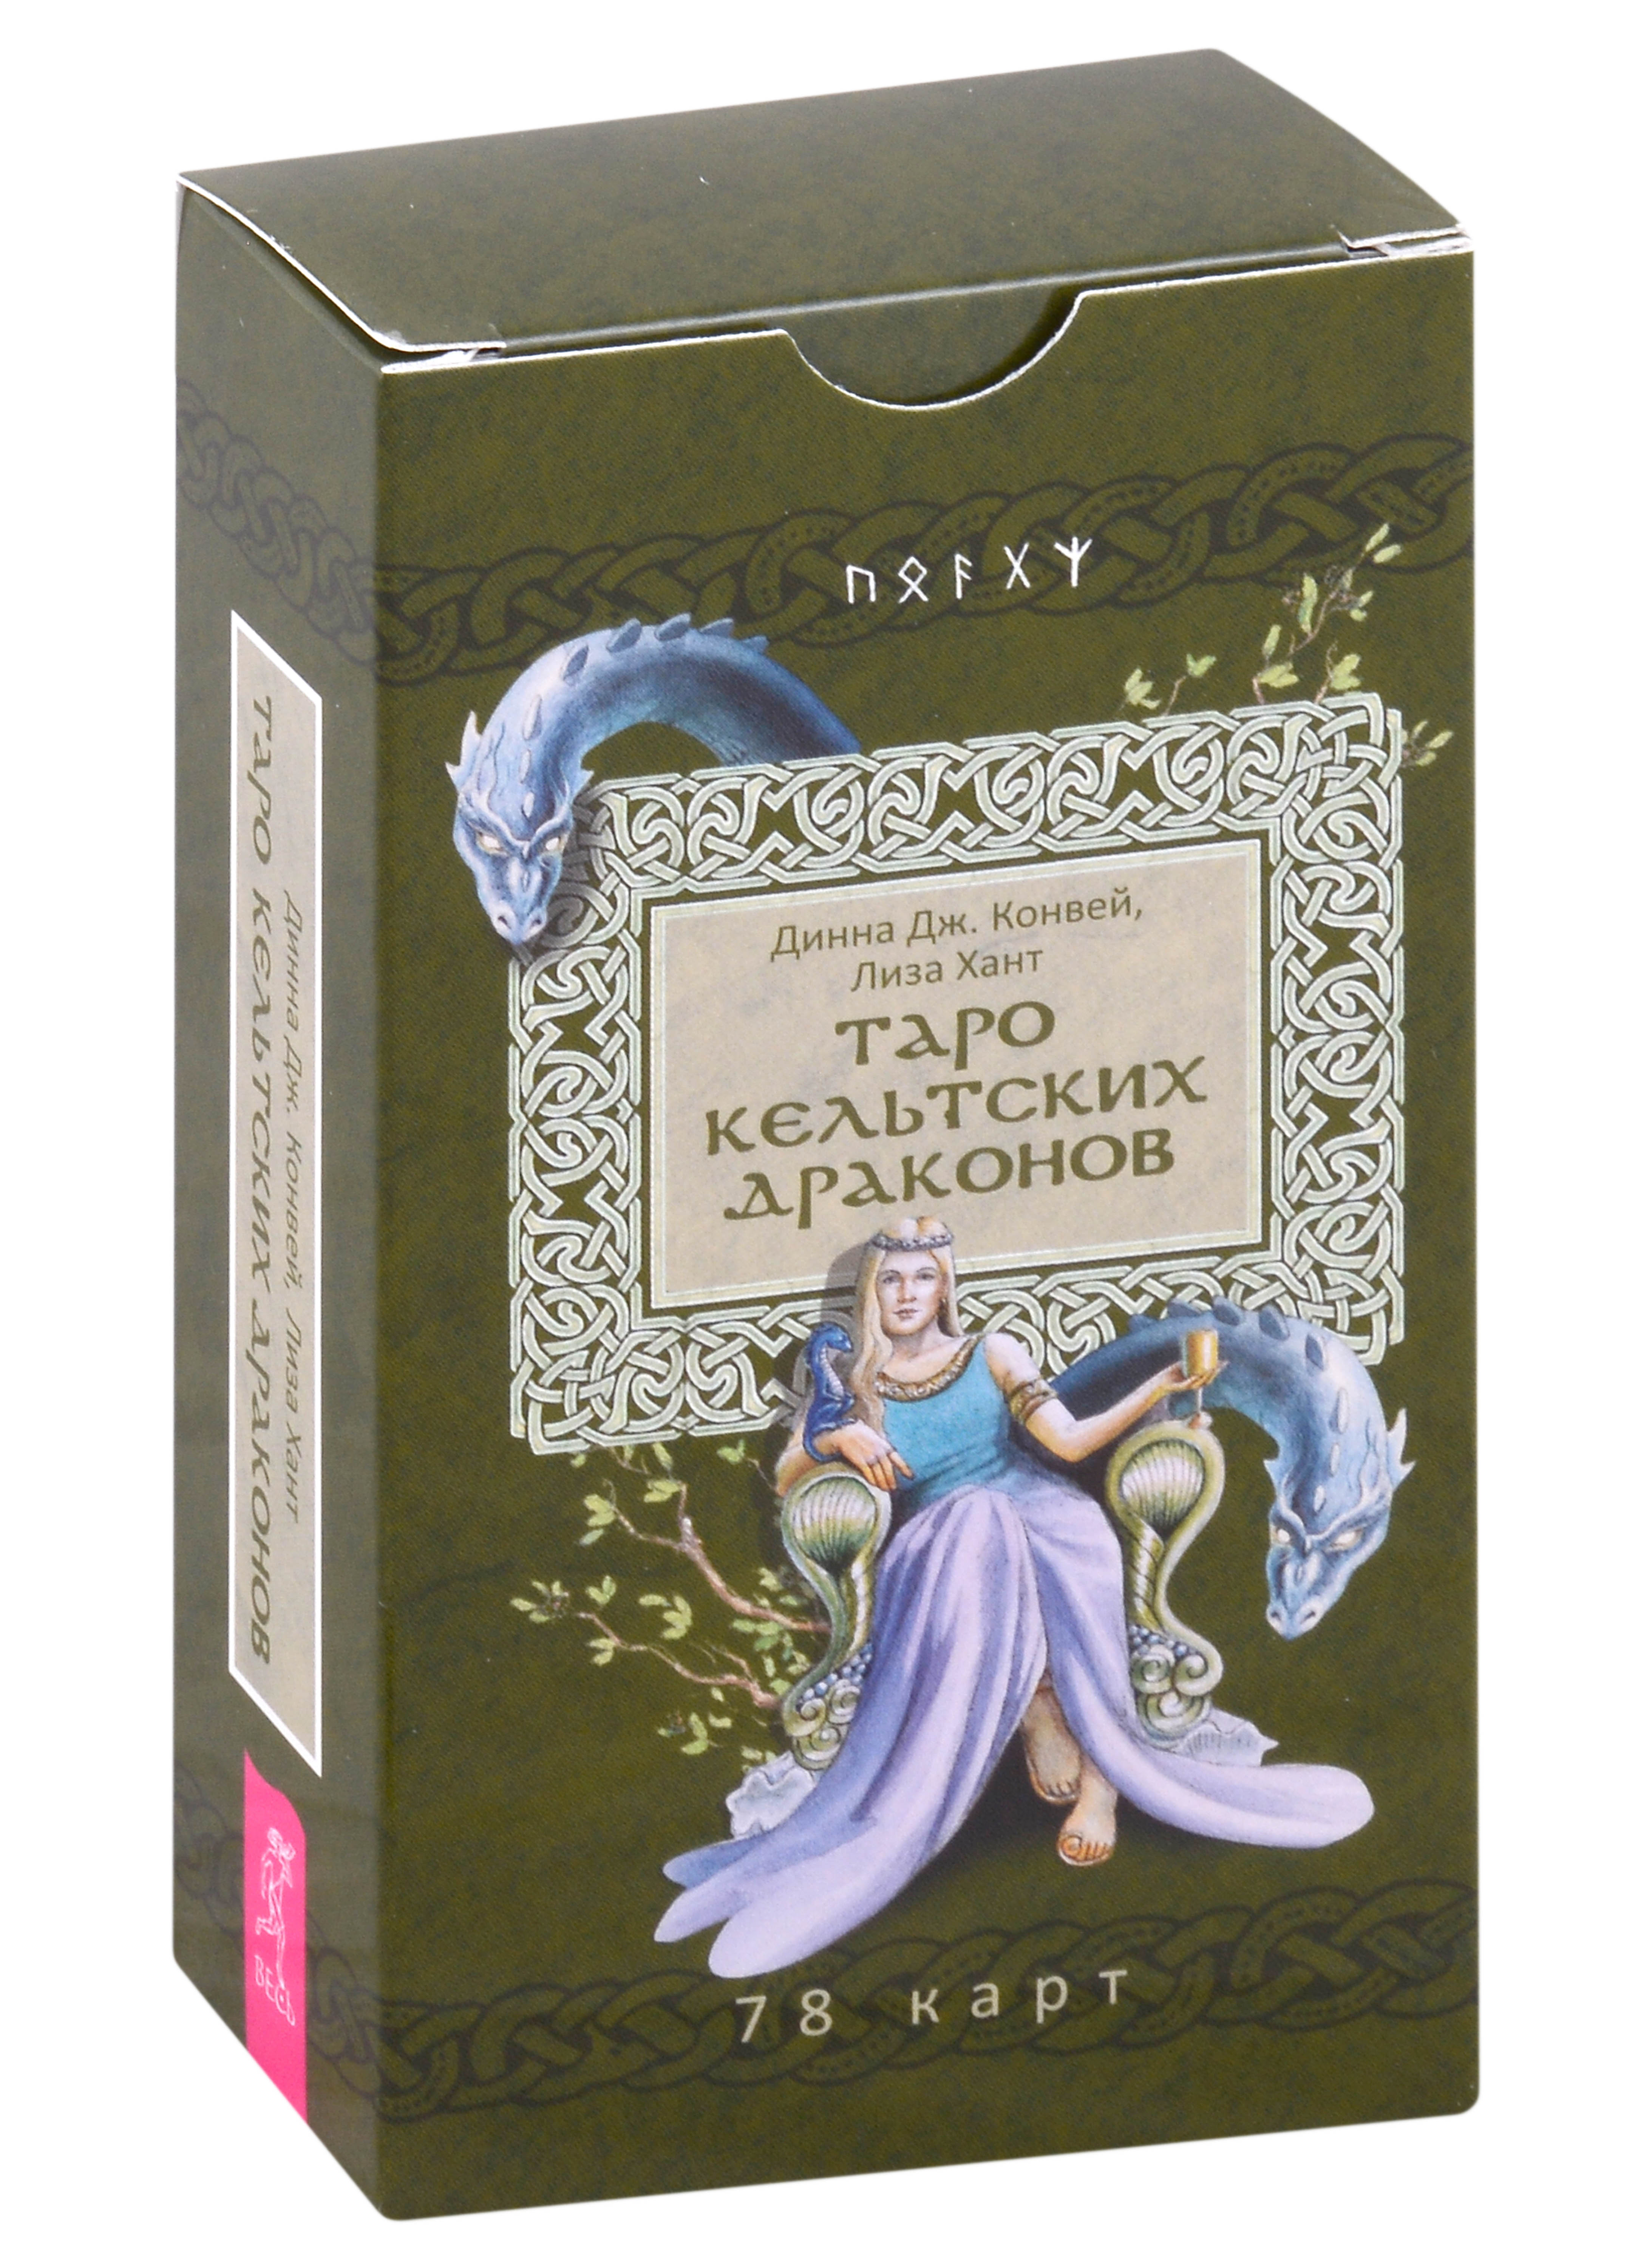 Конвей Динна Дж., Хант Лиза Таро кельтских драконов (78 карт) конвей д дж таро фантастических существ